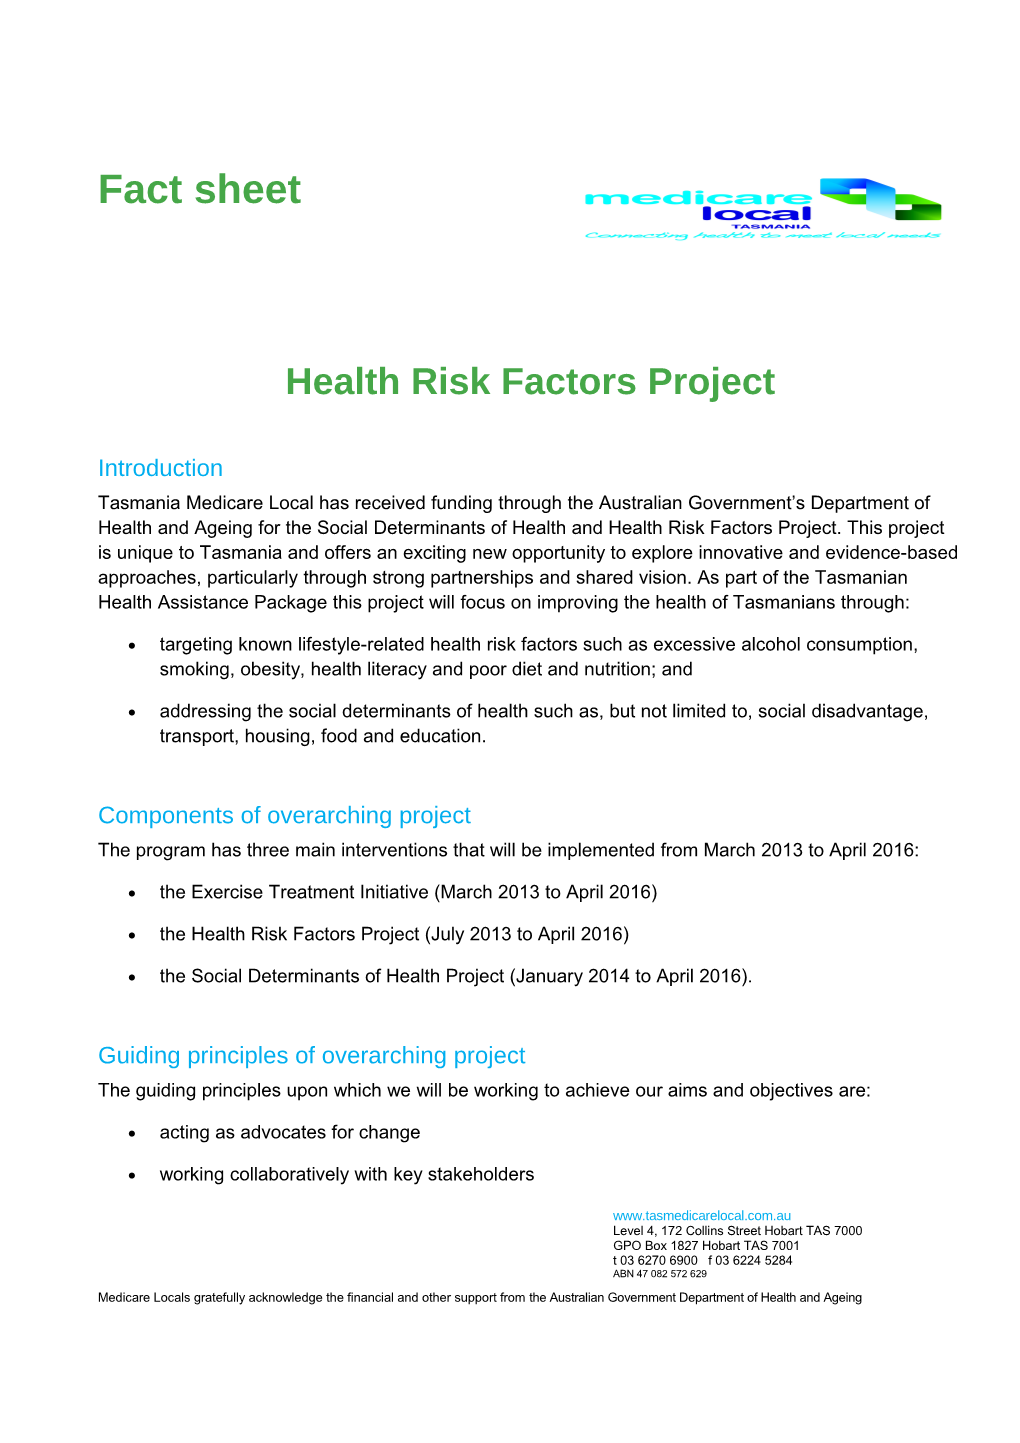 Health Risk Factors Project